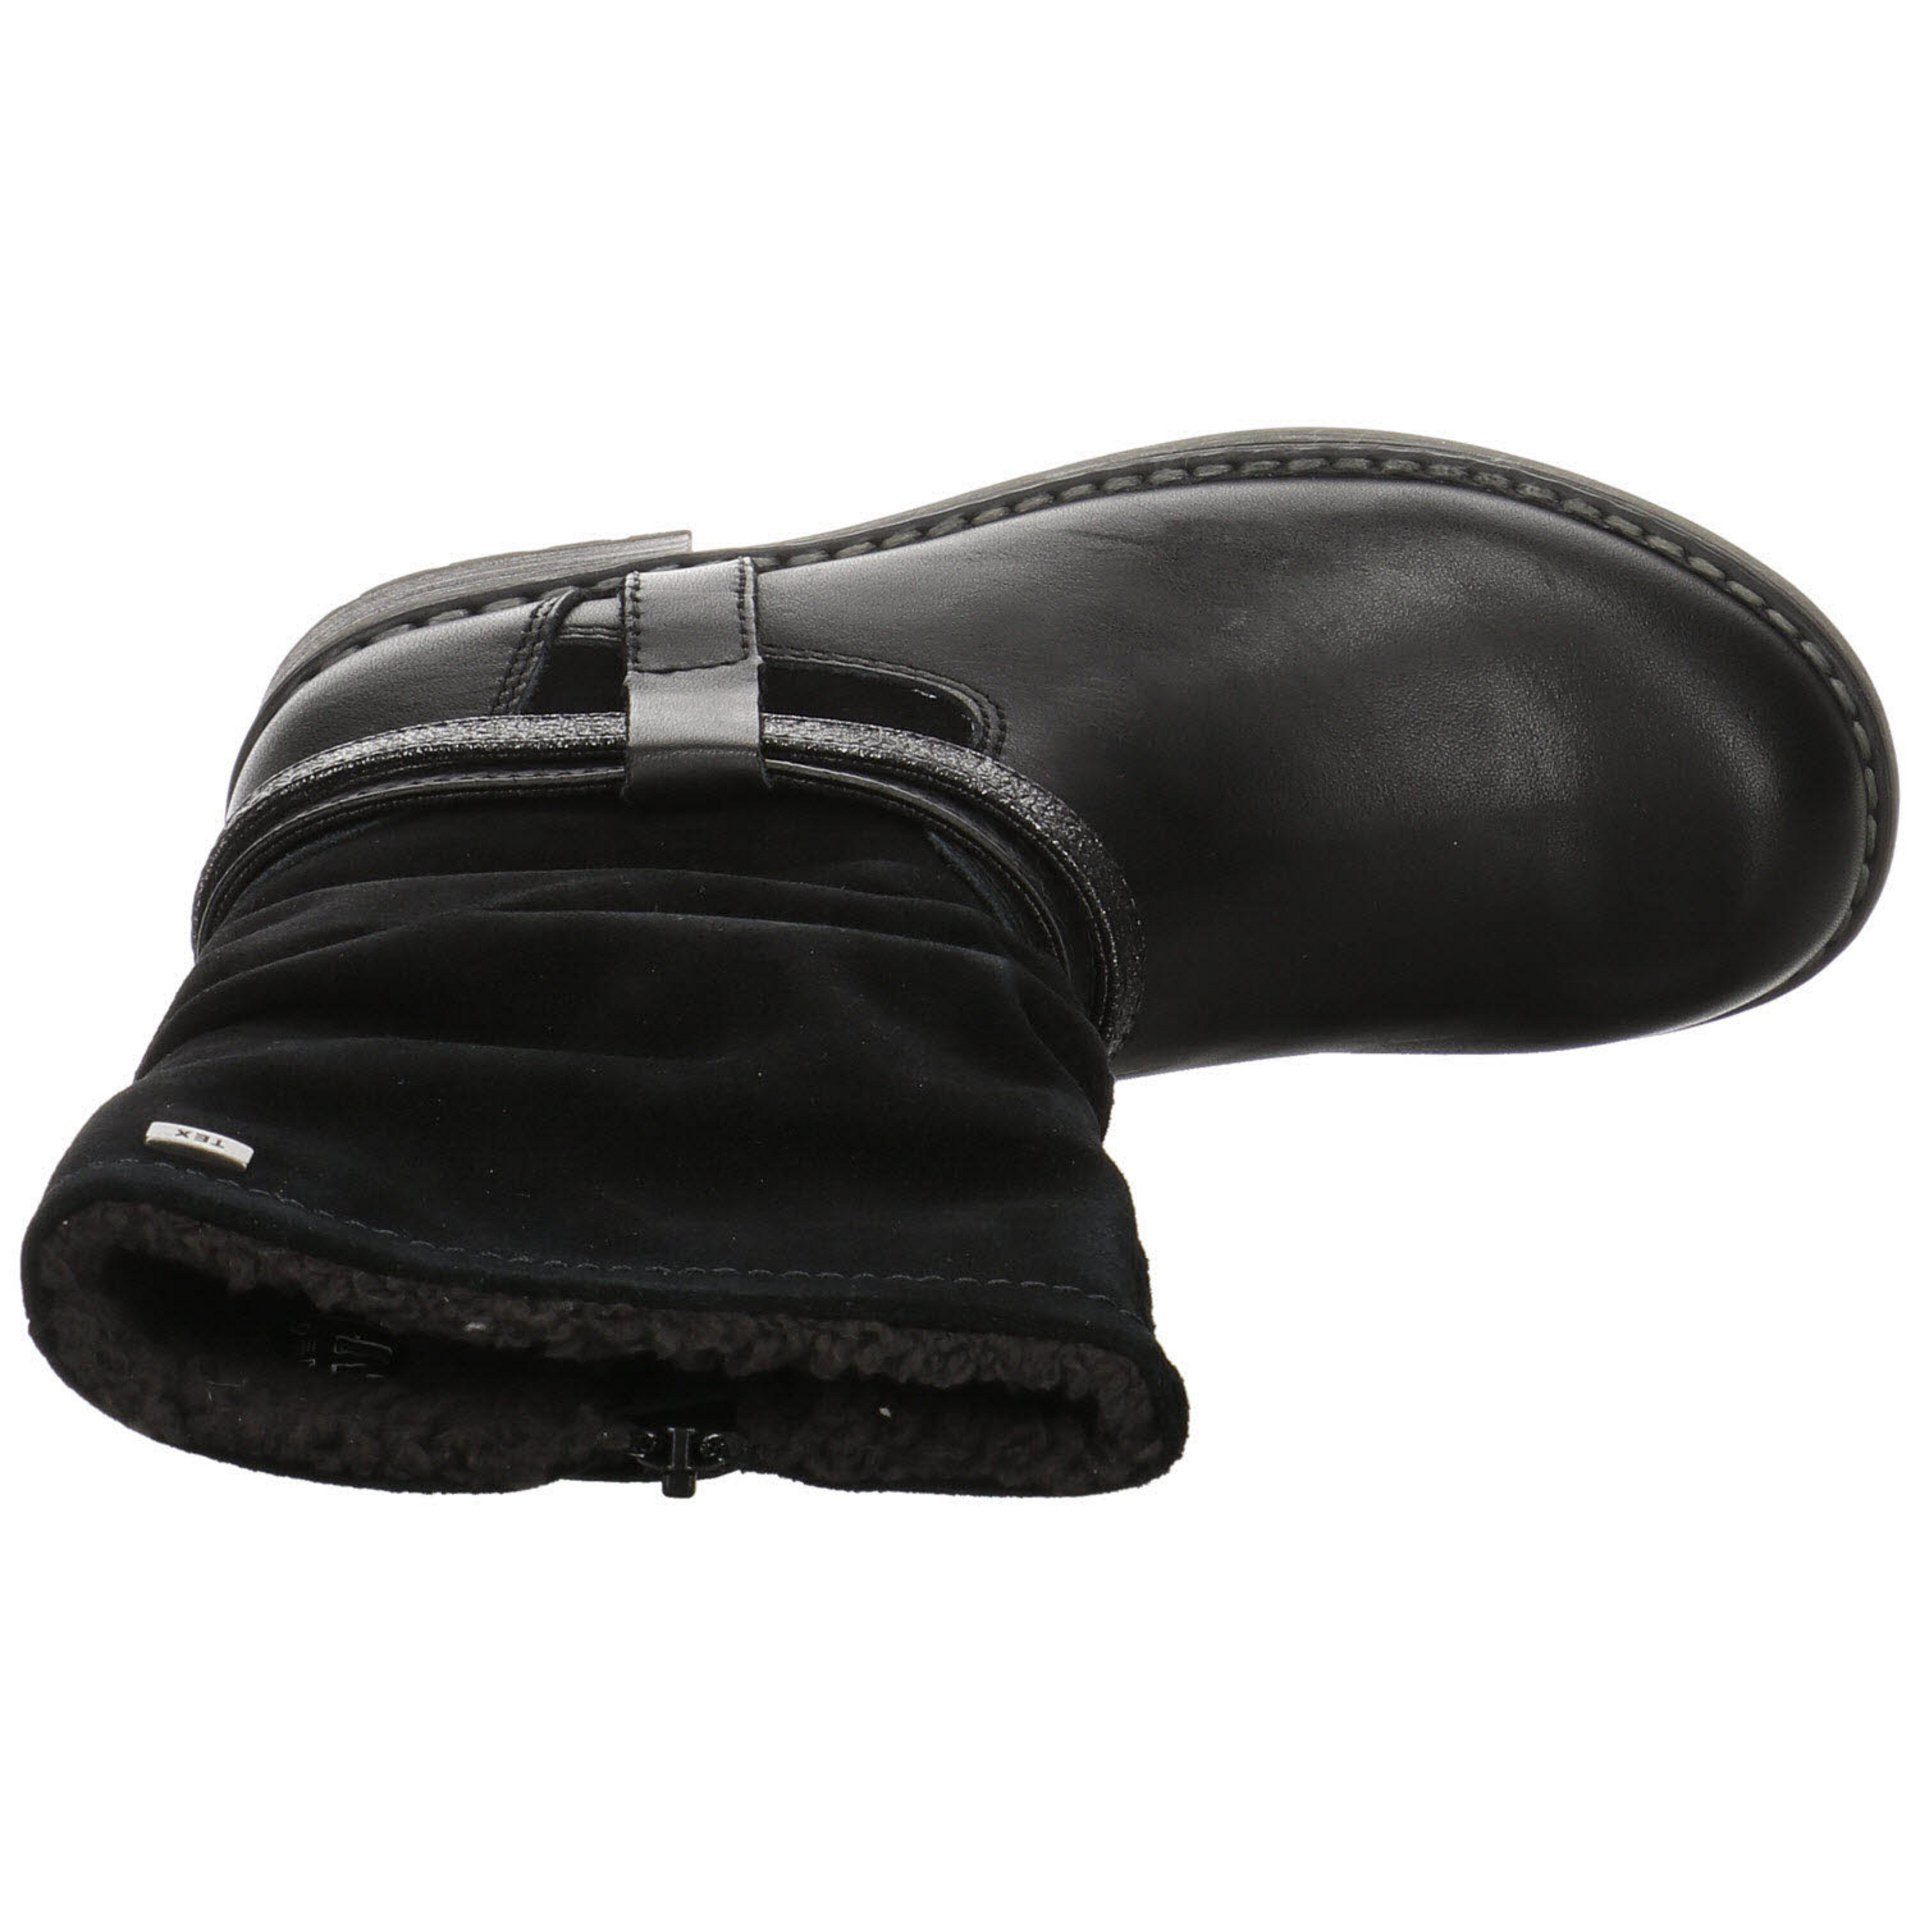 Mädchen Stiefel Stiefelette Black Lia-TEX Lurchi Stiefel Lederkombination Schuhe Nappa